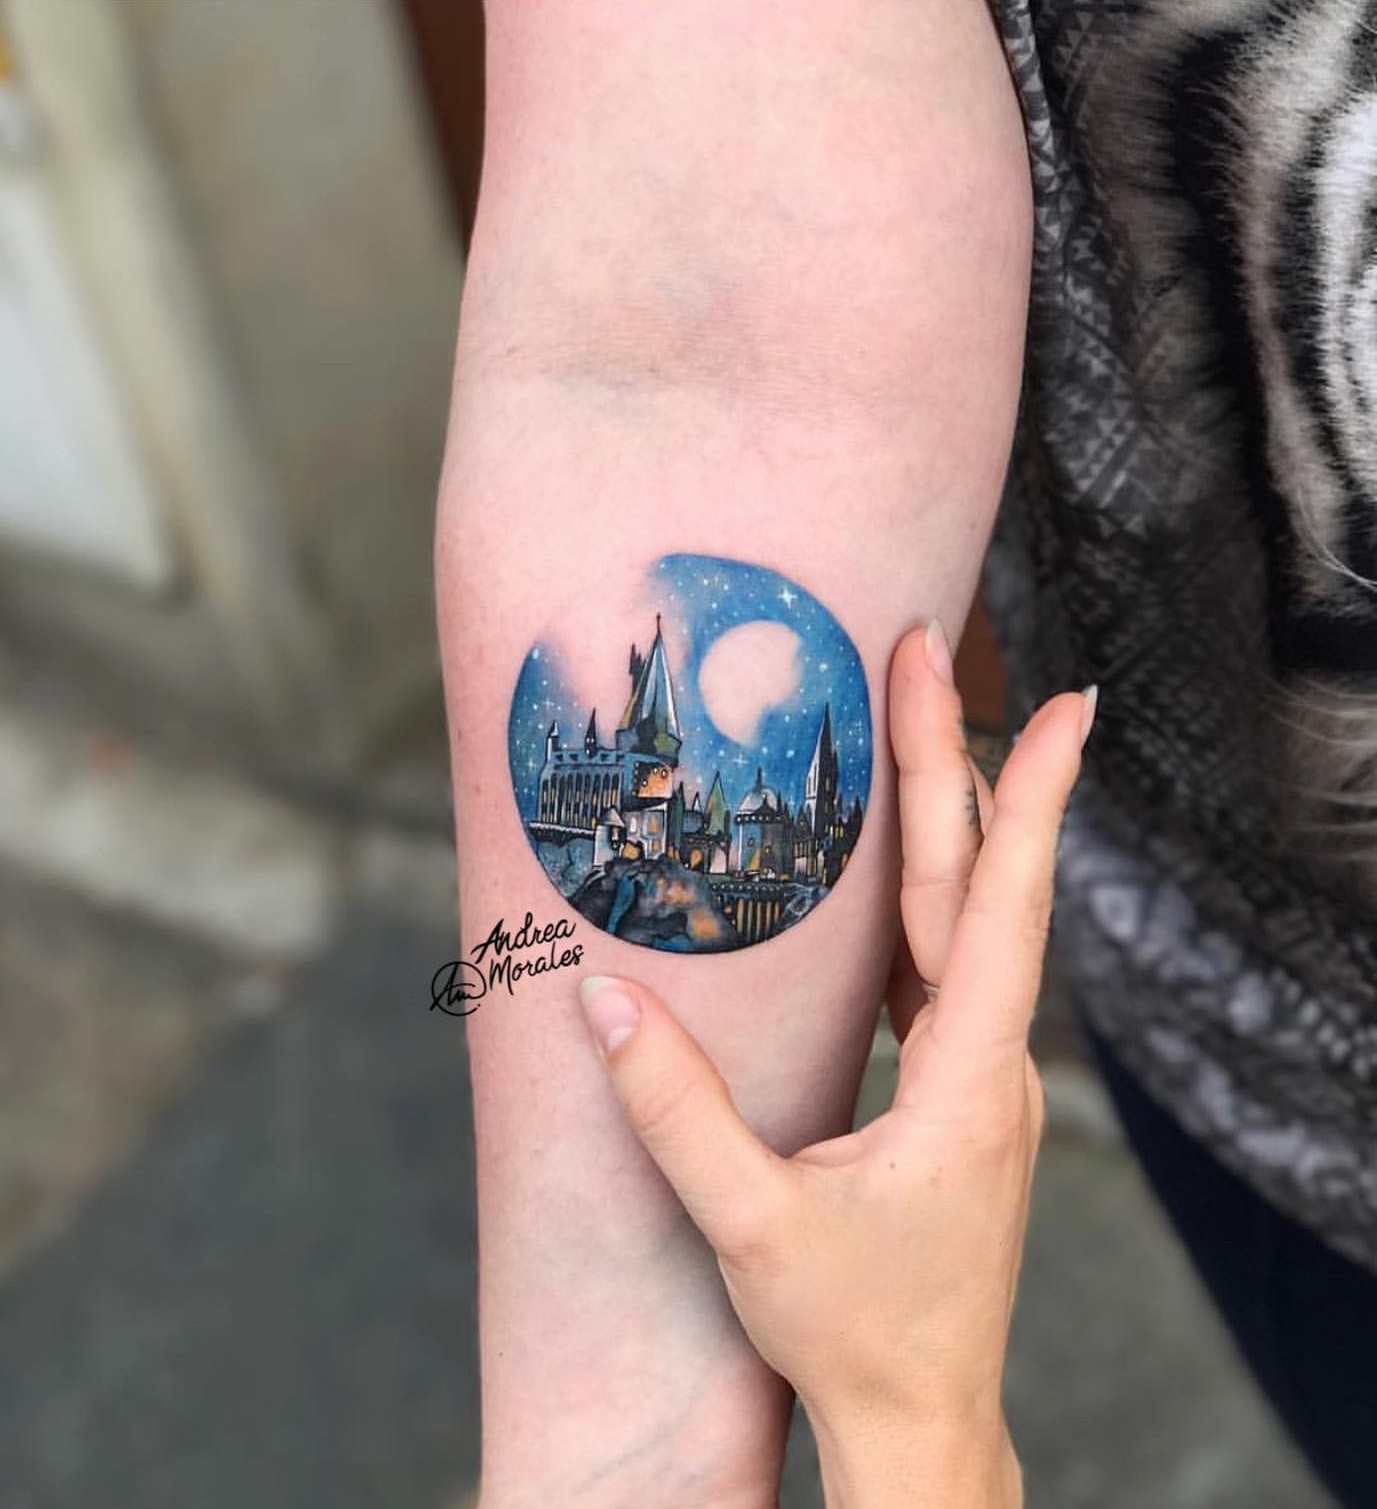 tatouage Harry Potter sur l'avant-bras jolie idée colorée